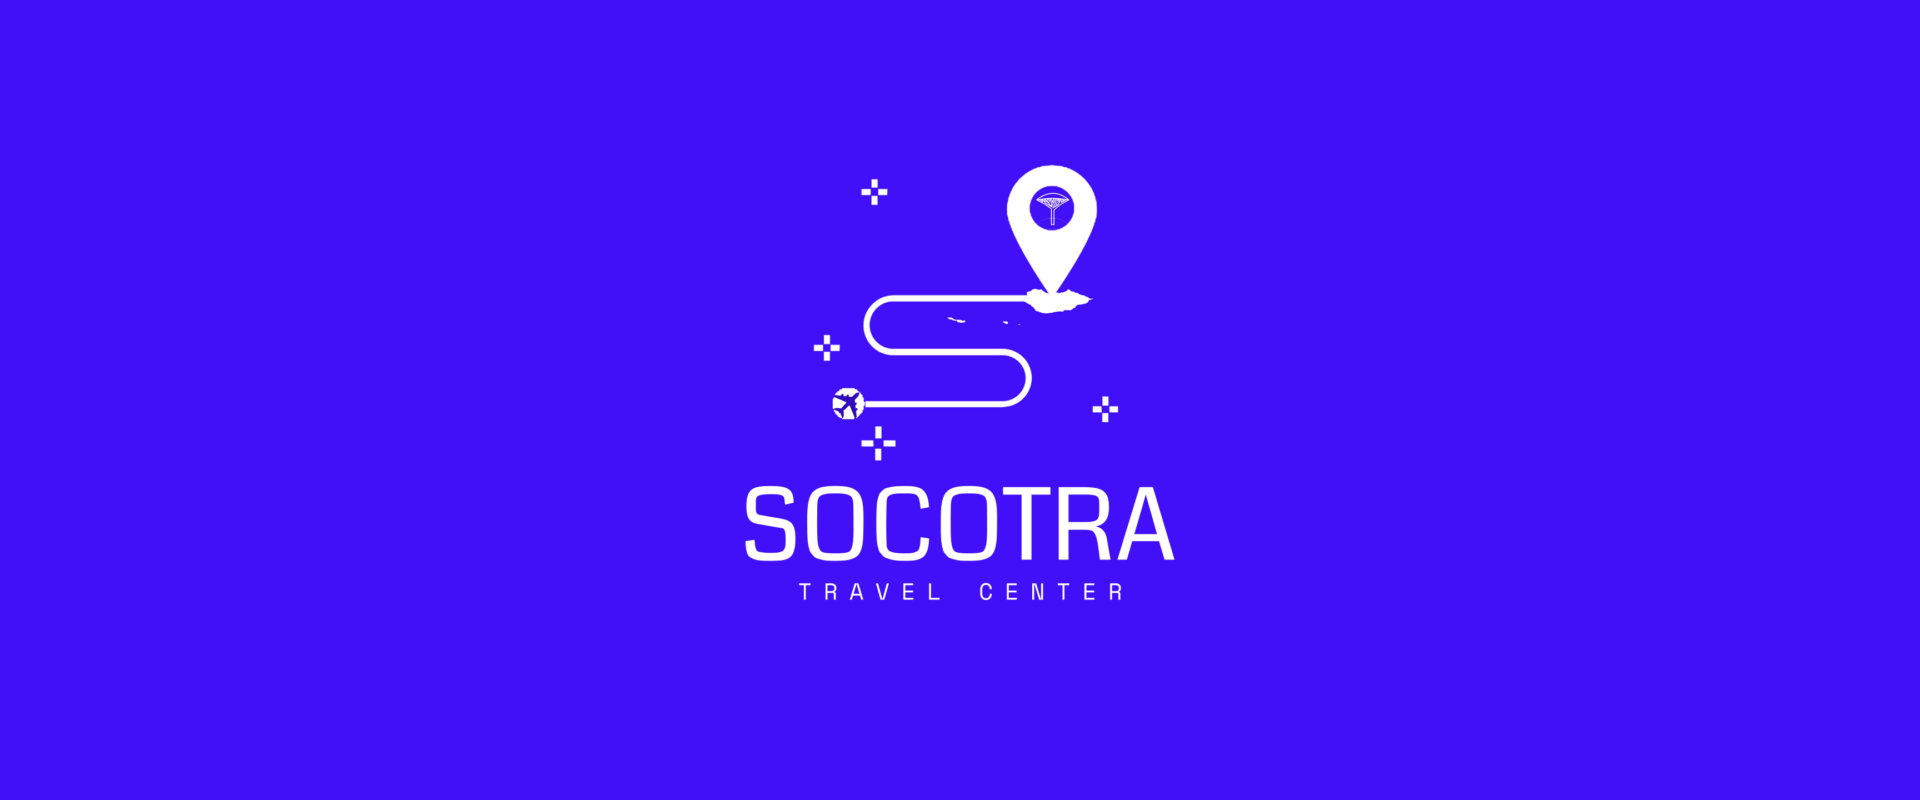 travel to socotra island